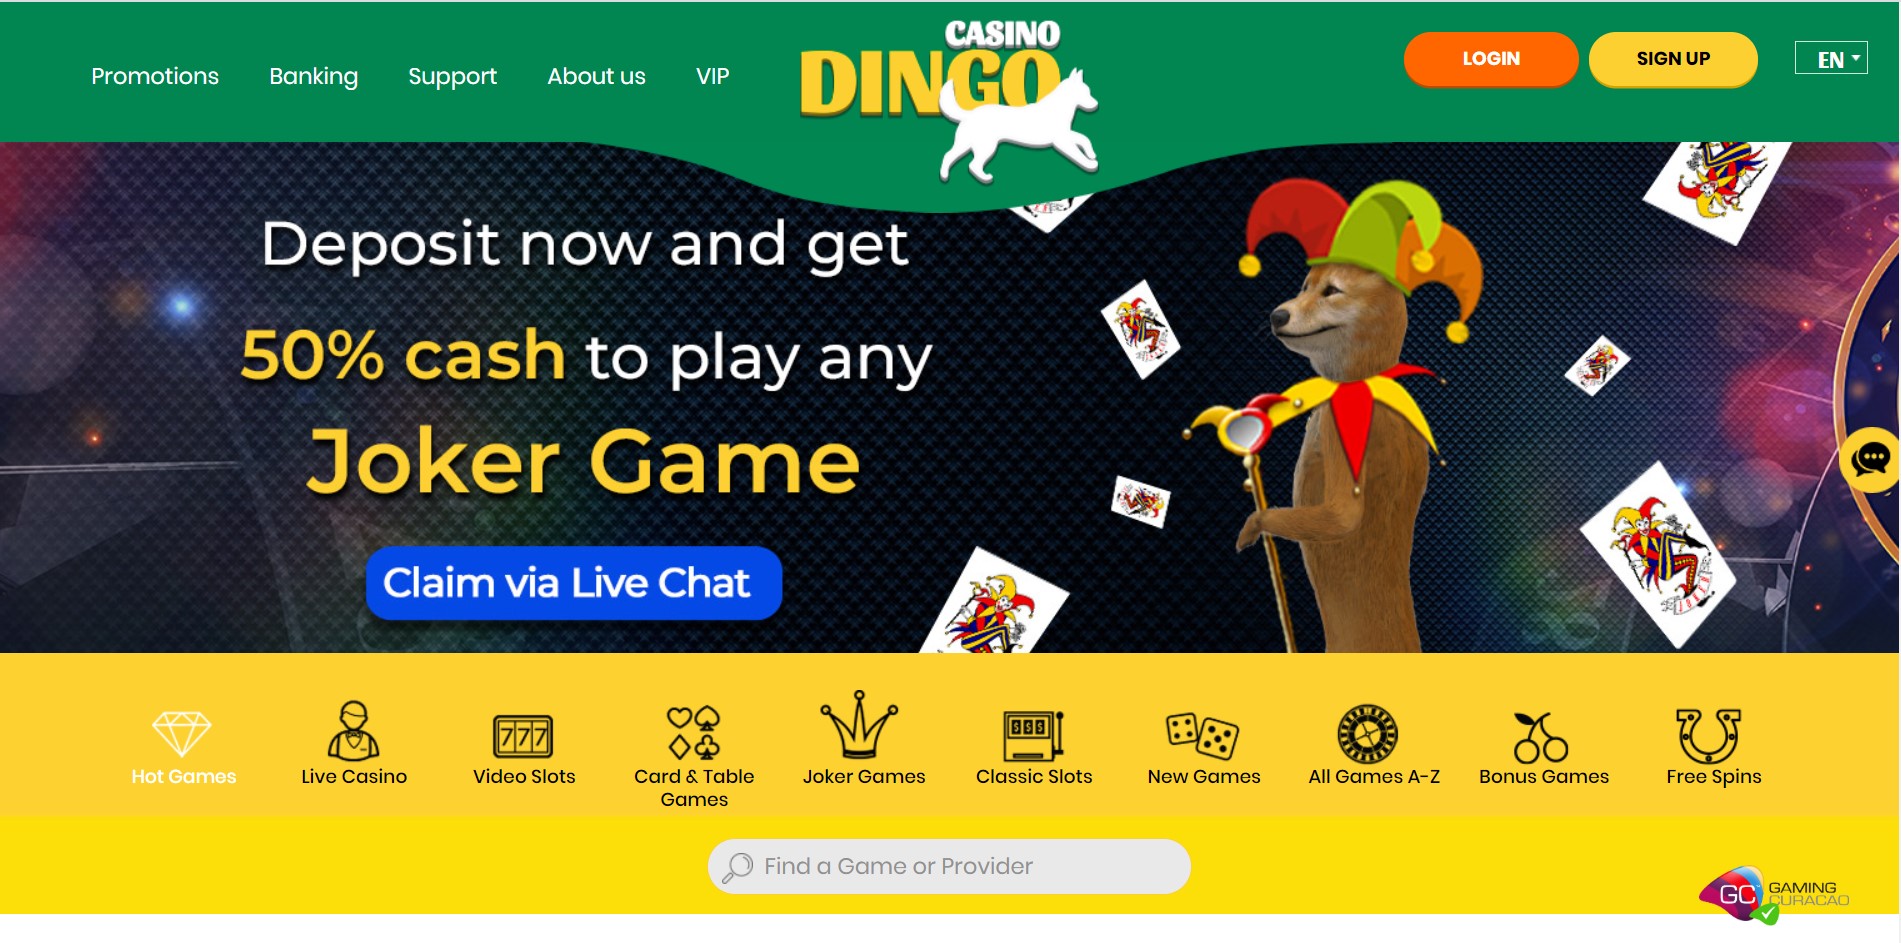 Casino Dingo Bonus